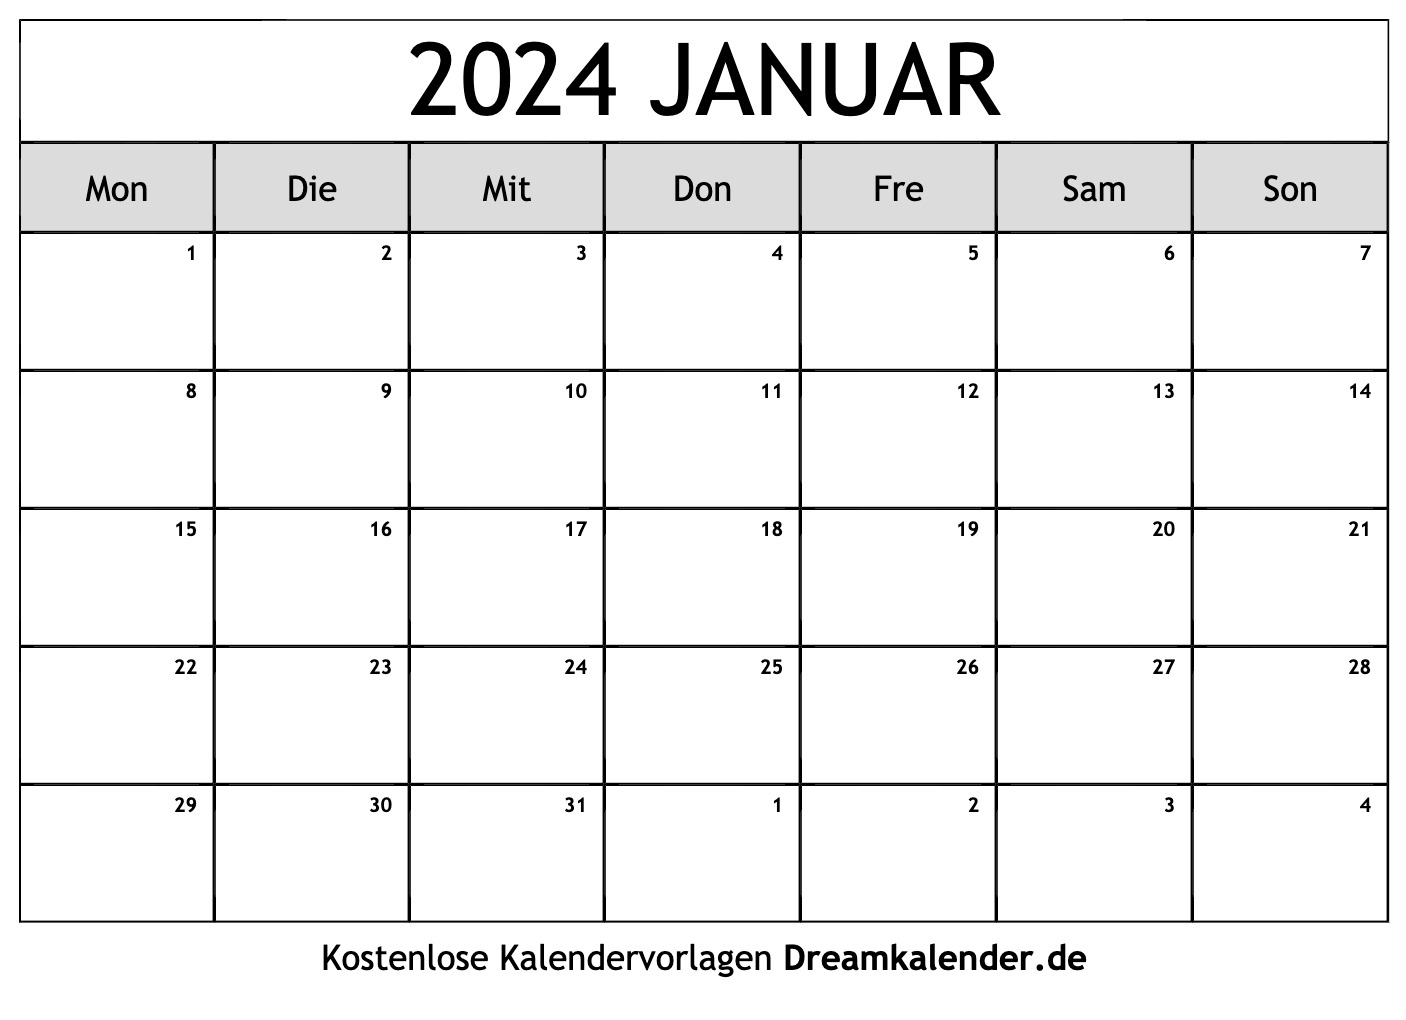 kalender-2024-zum-ausdrucken-kostenlos-excel-top-latest-famous-school